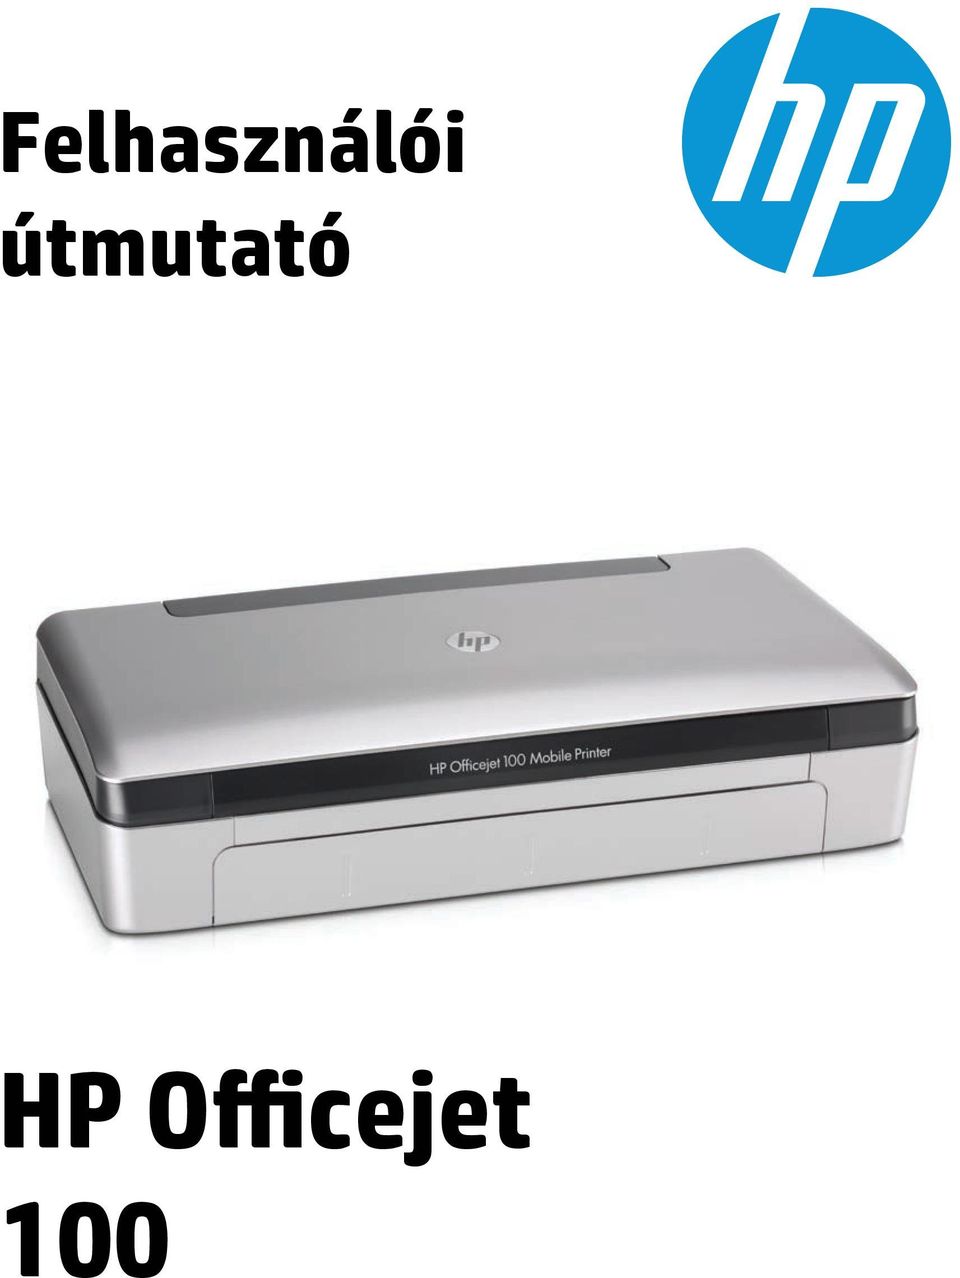 Felhasználói útmutató. HP Officejet PDF Ingyenes letöltés